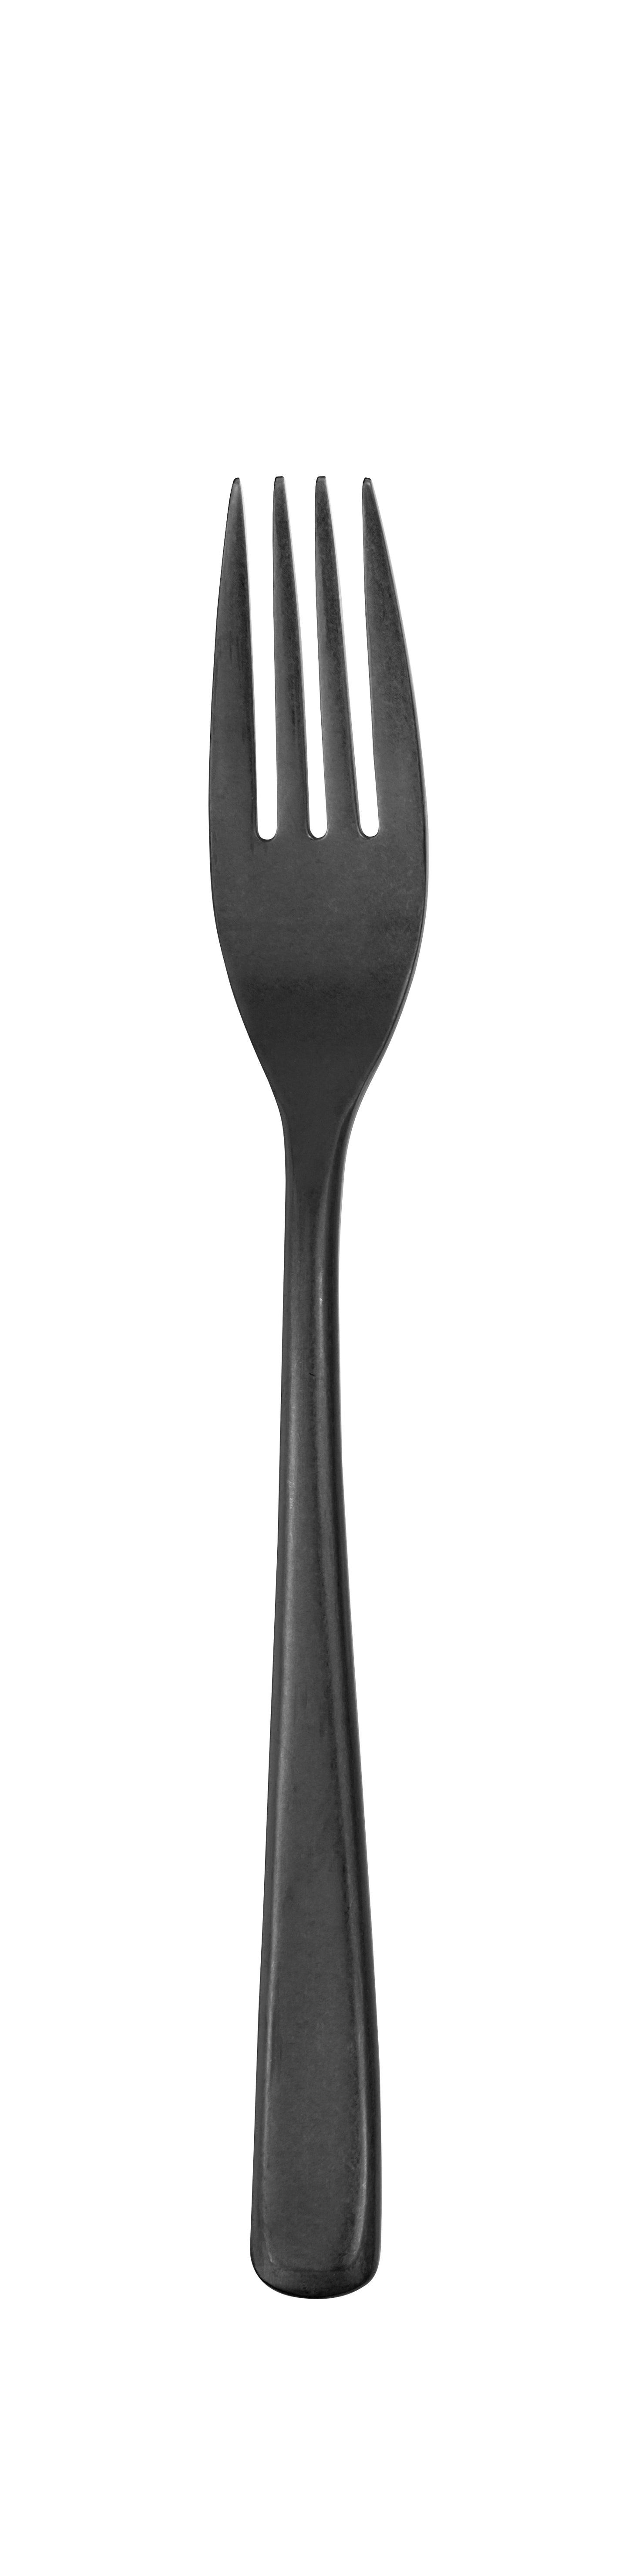 Table fork MEDAN PVD gun metal stonewashed 212 mm